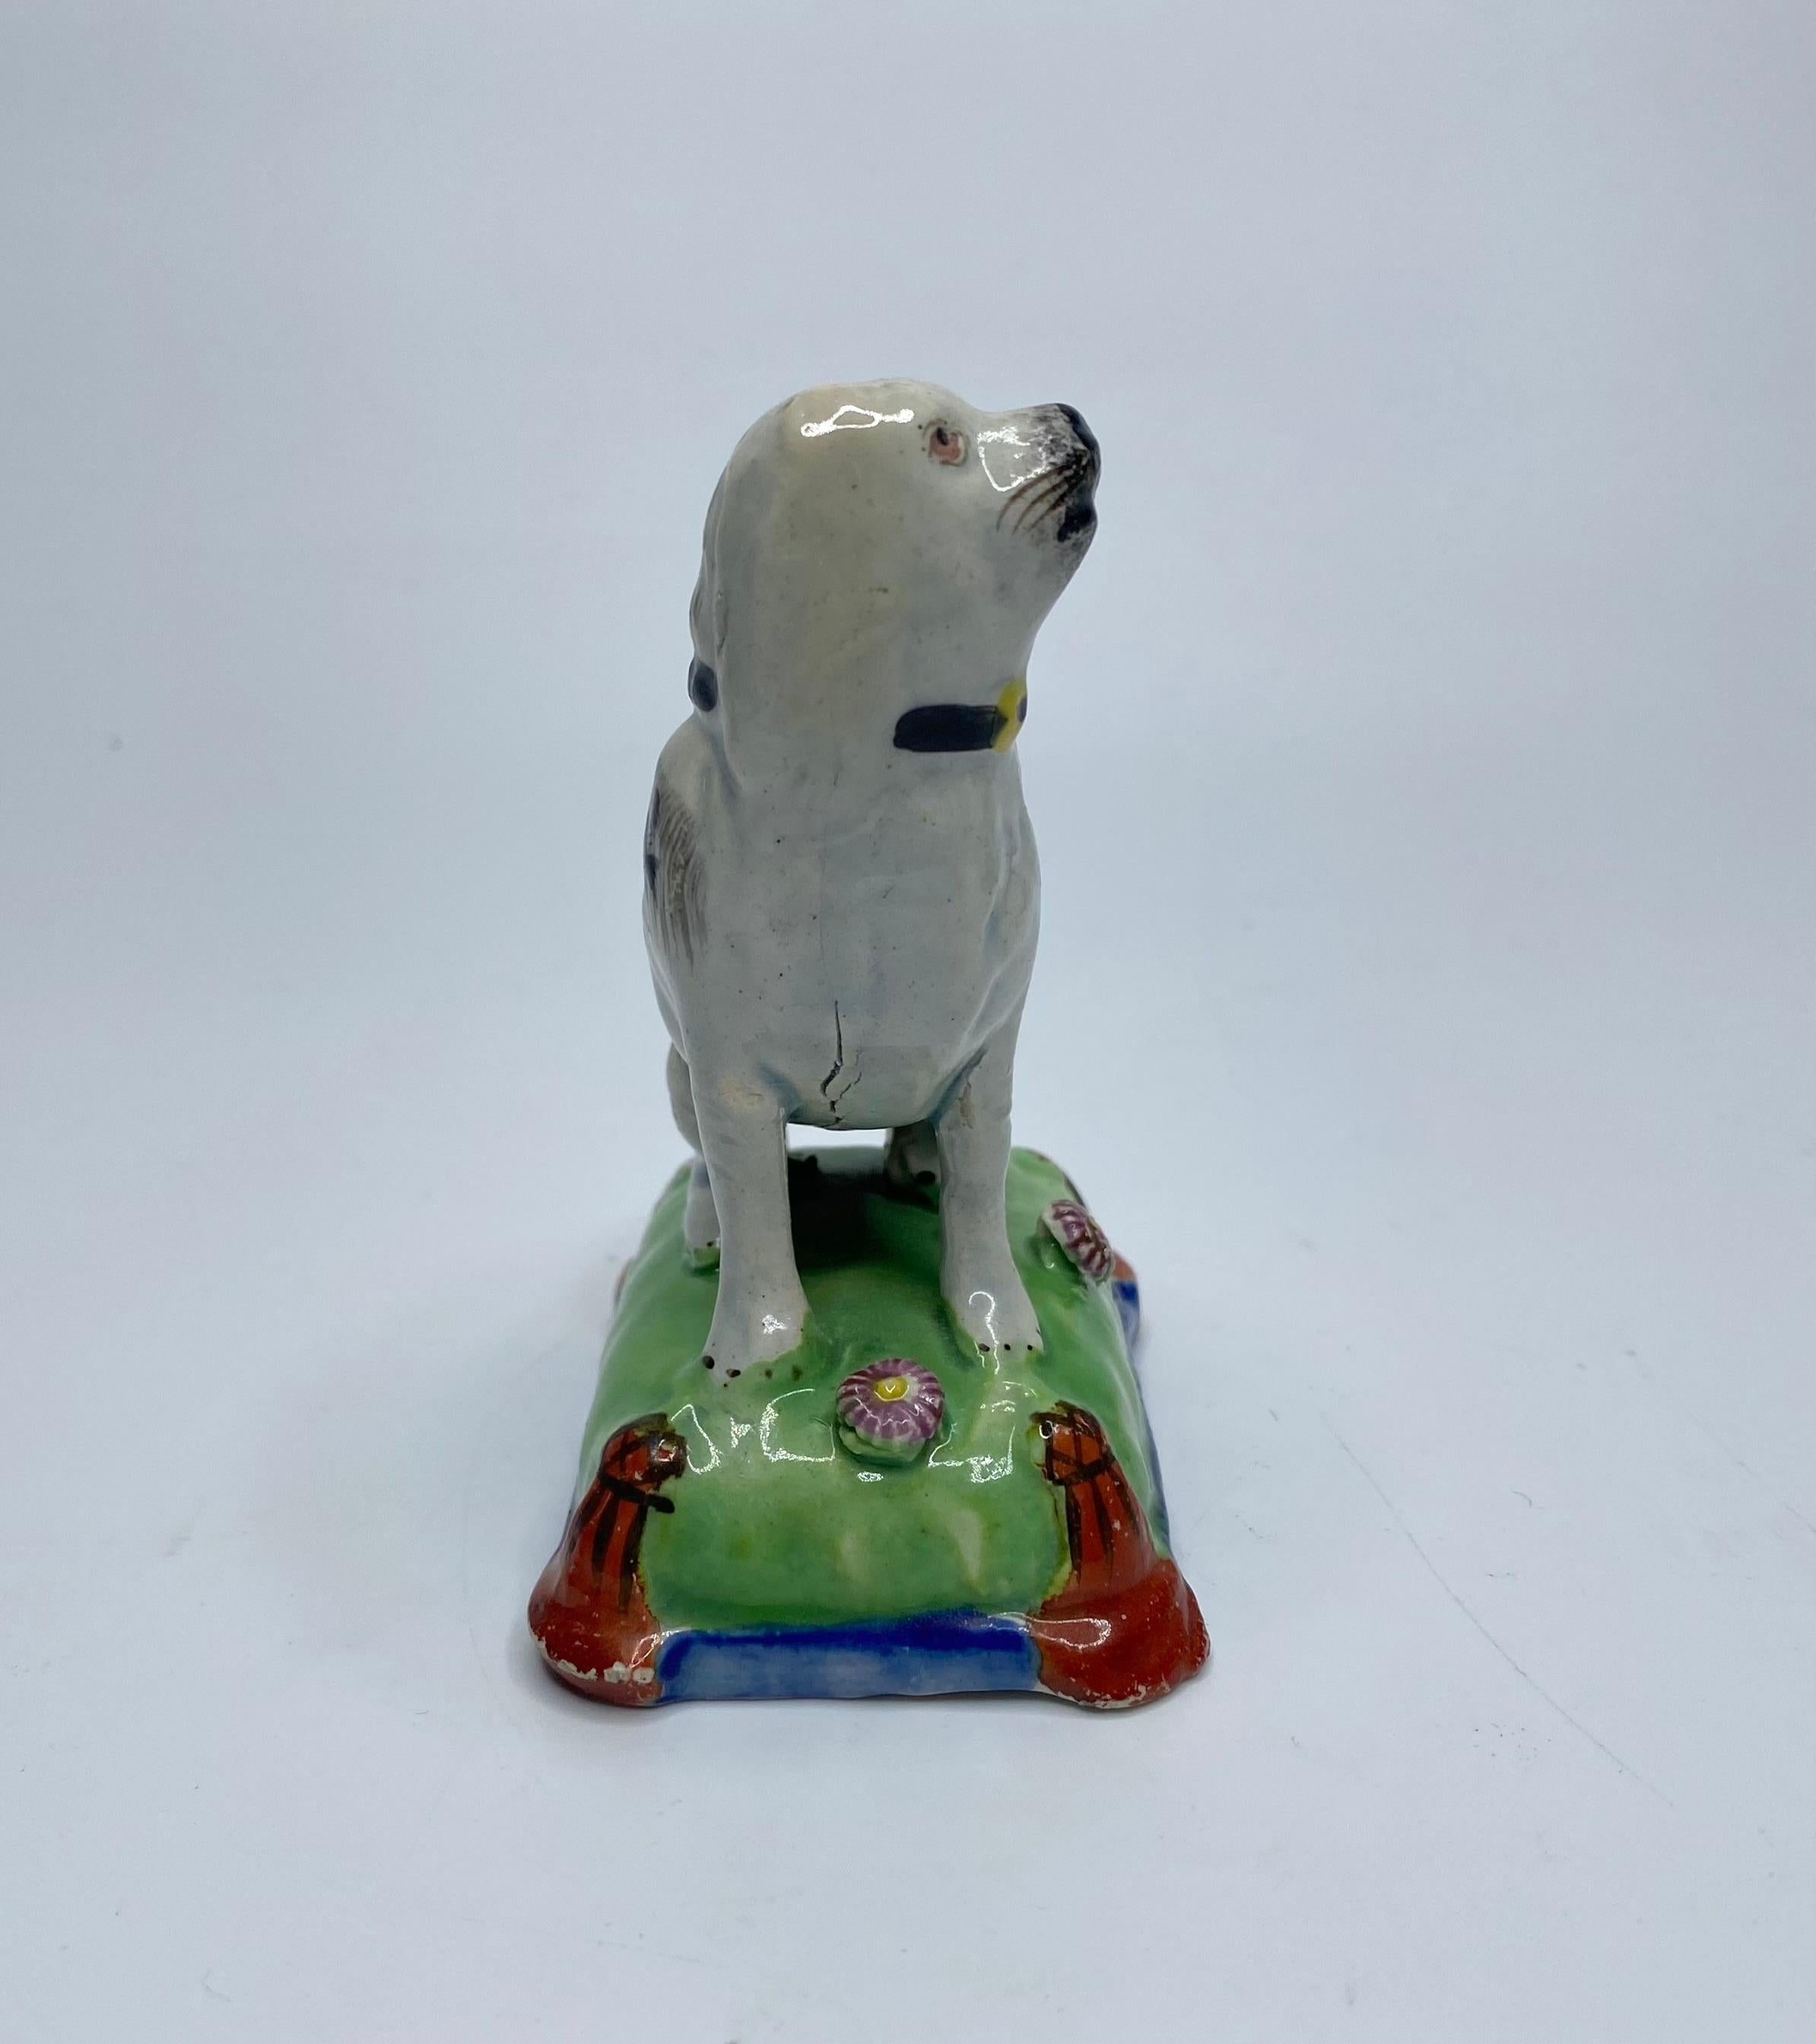 Chien assis en faïence perlée de la poterie du Staffordshire, C.I.C. Joli modèle, représentant un chien tacheté de noir, assis sur un coussin.
Le coussin émaillé vert et bleu, orné de deux têtes de fleurs et de glands rouge fer, noués aux coins.
Le